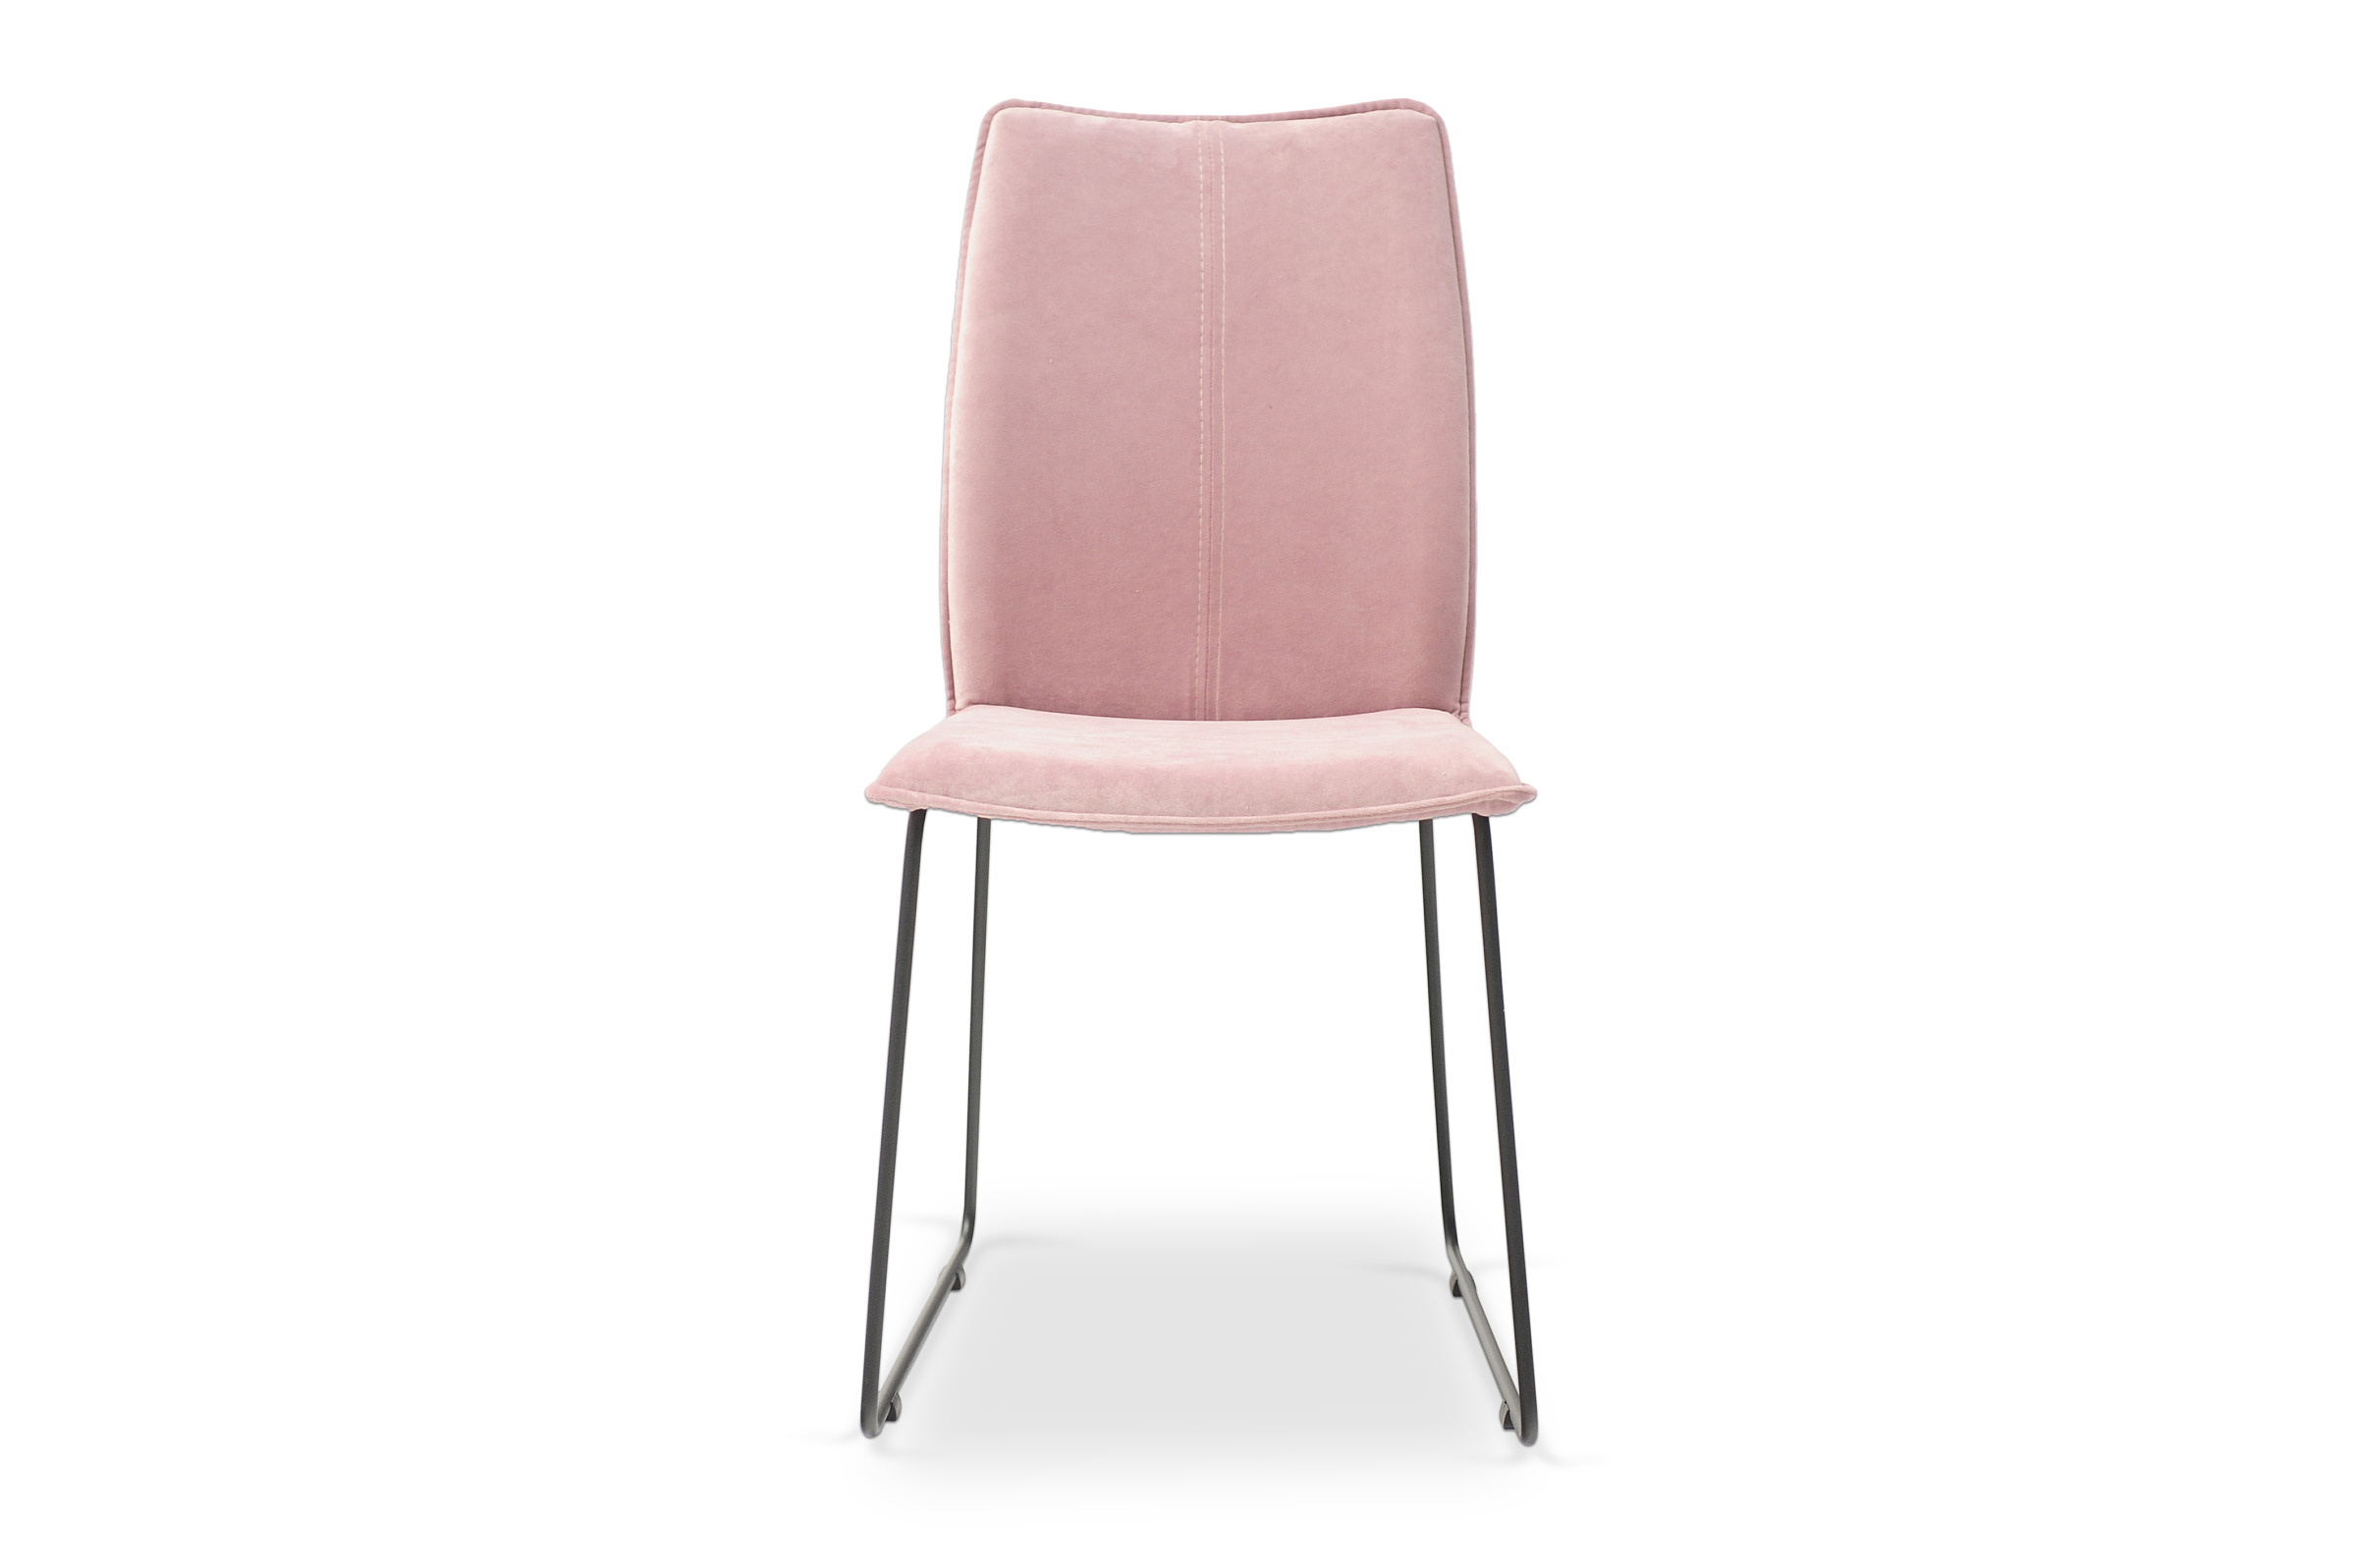 śliczne krzesło loftowe na metalowej nodze różowe